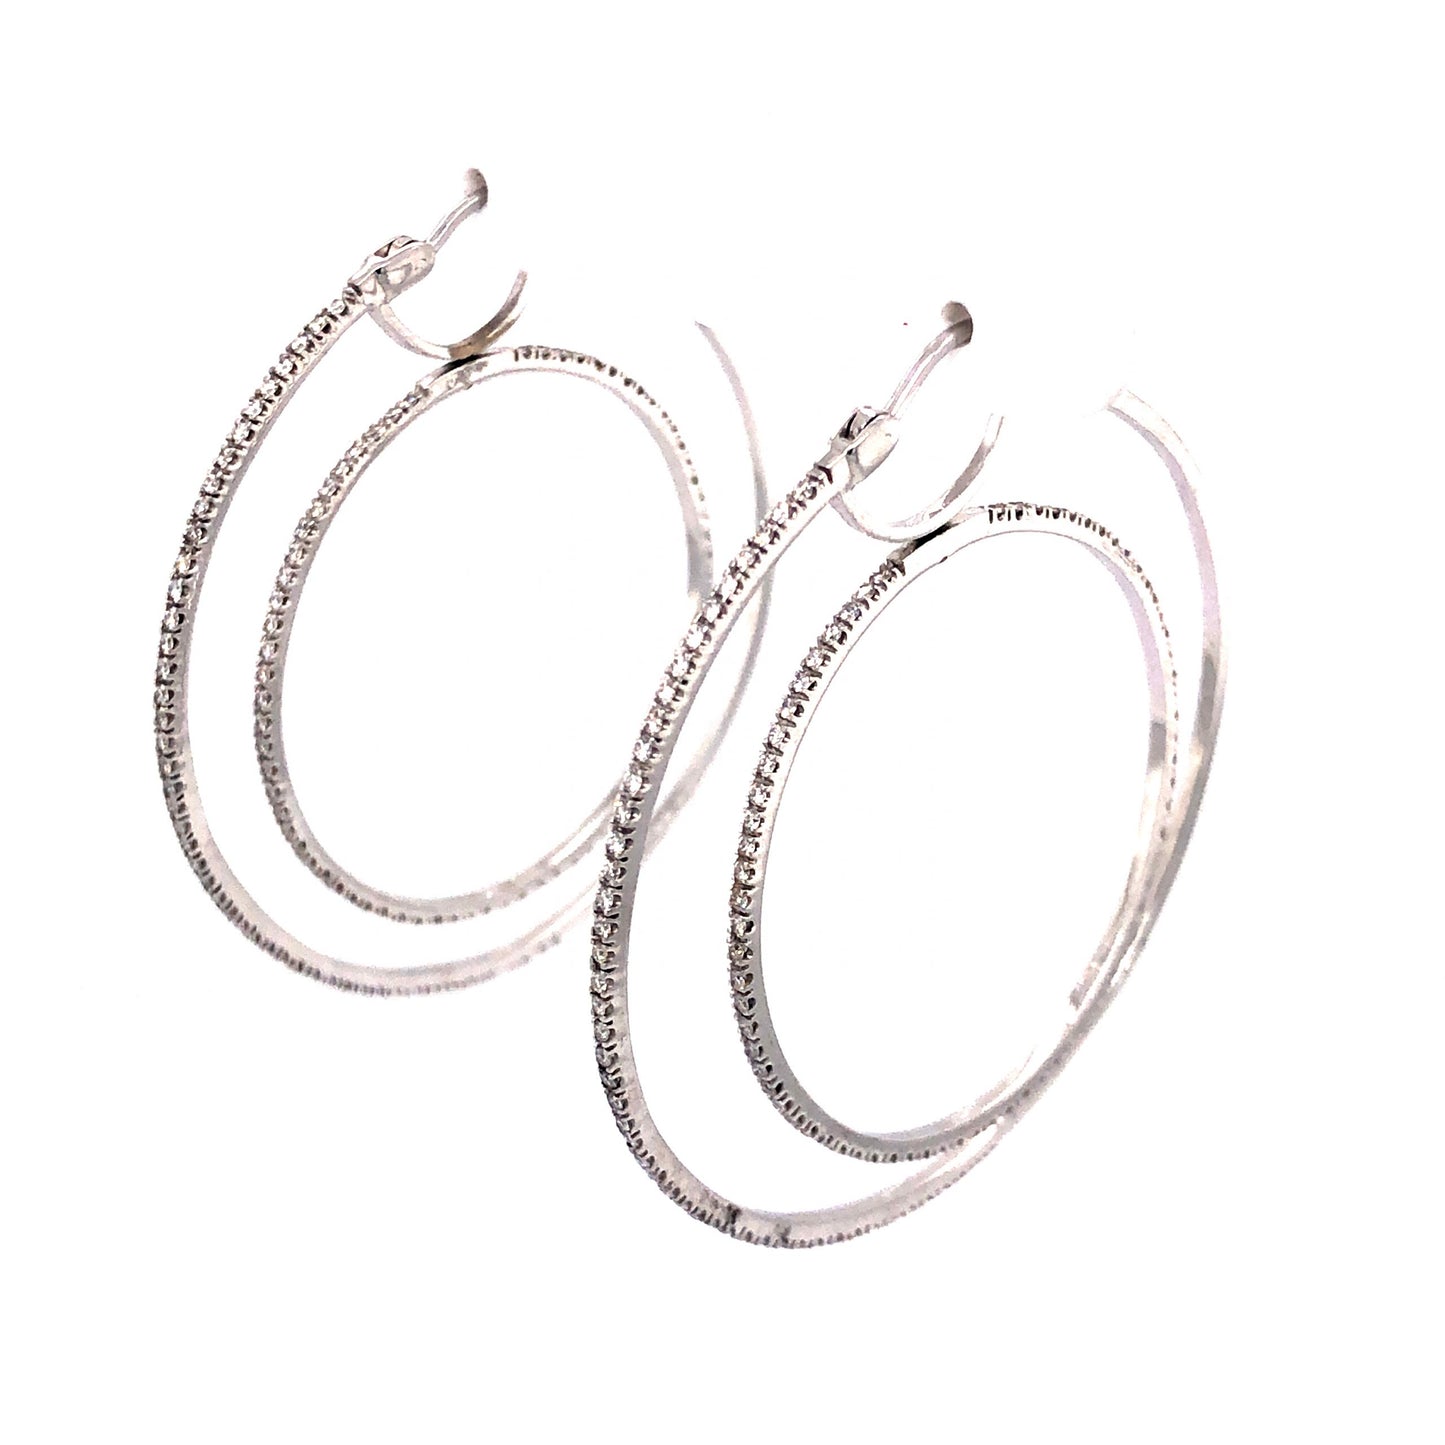 1.37 Spinning Diamond Hoop Earrings in 18k White Gold